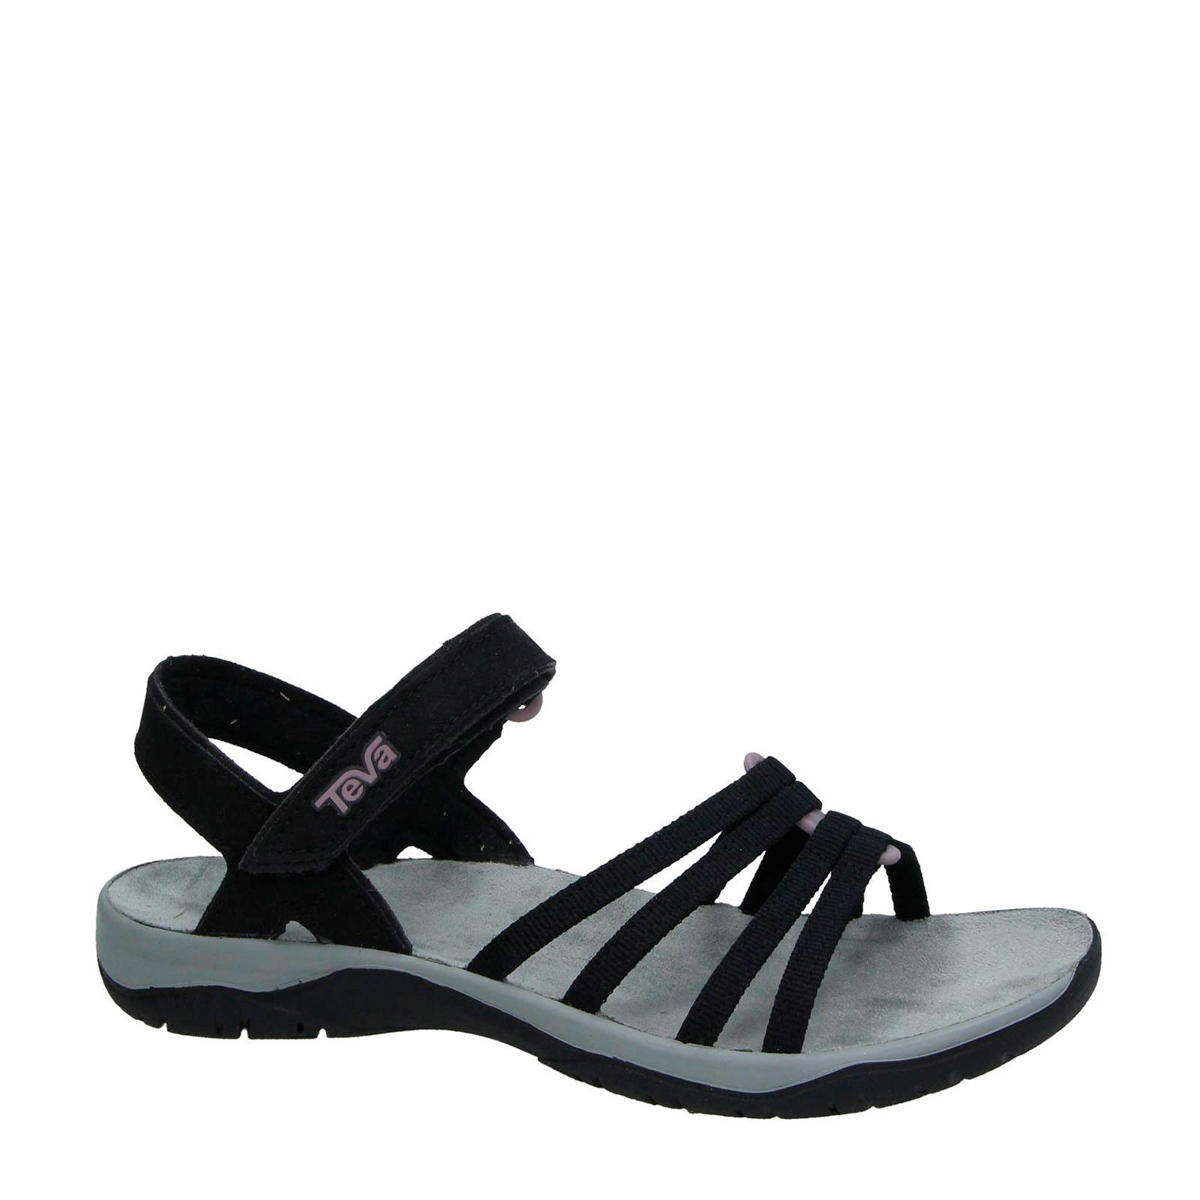 Koe los van produceren Teva Elzada outdoor sandalen zwart | wehkamp